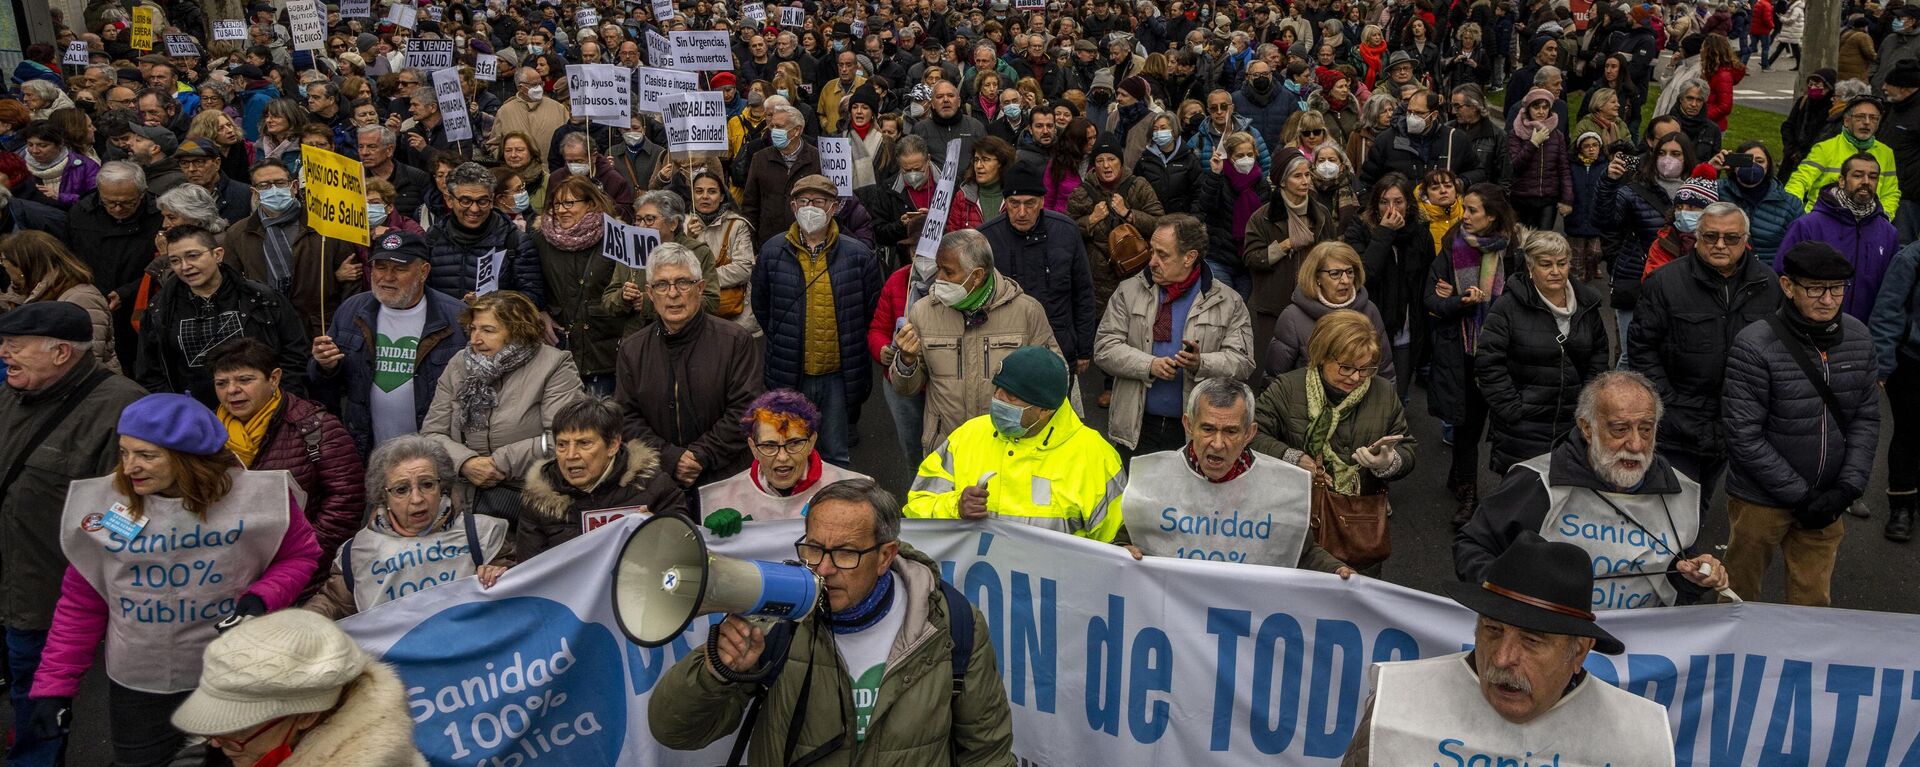 La gente marcha durante una protesta en apoyo de la salud pública en Madrid, España, el domingo 15 de enero de 2023 - Sputnik Mundo, 1920, 01.03.2023